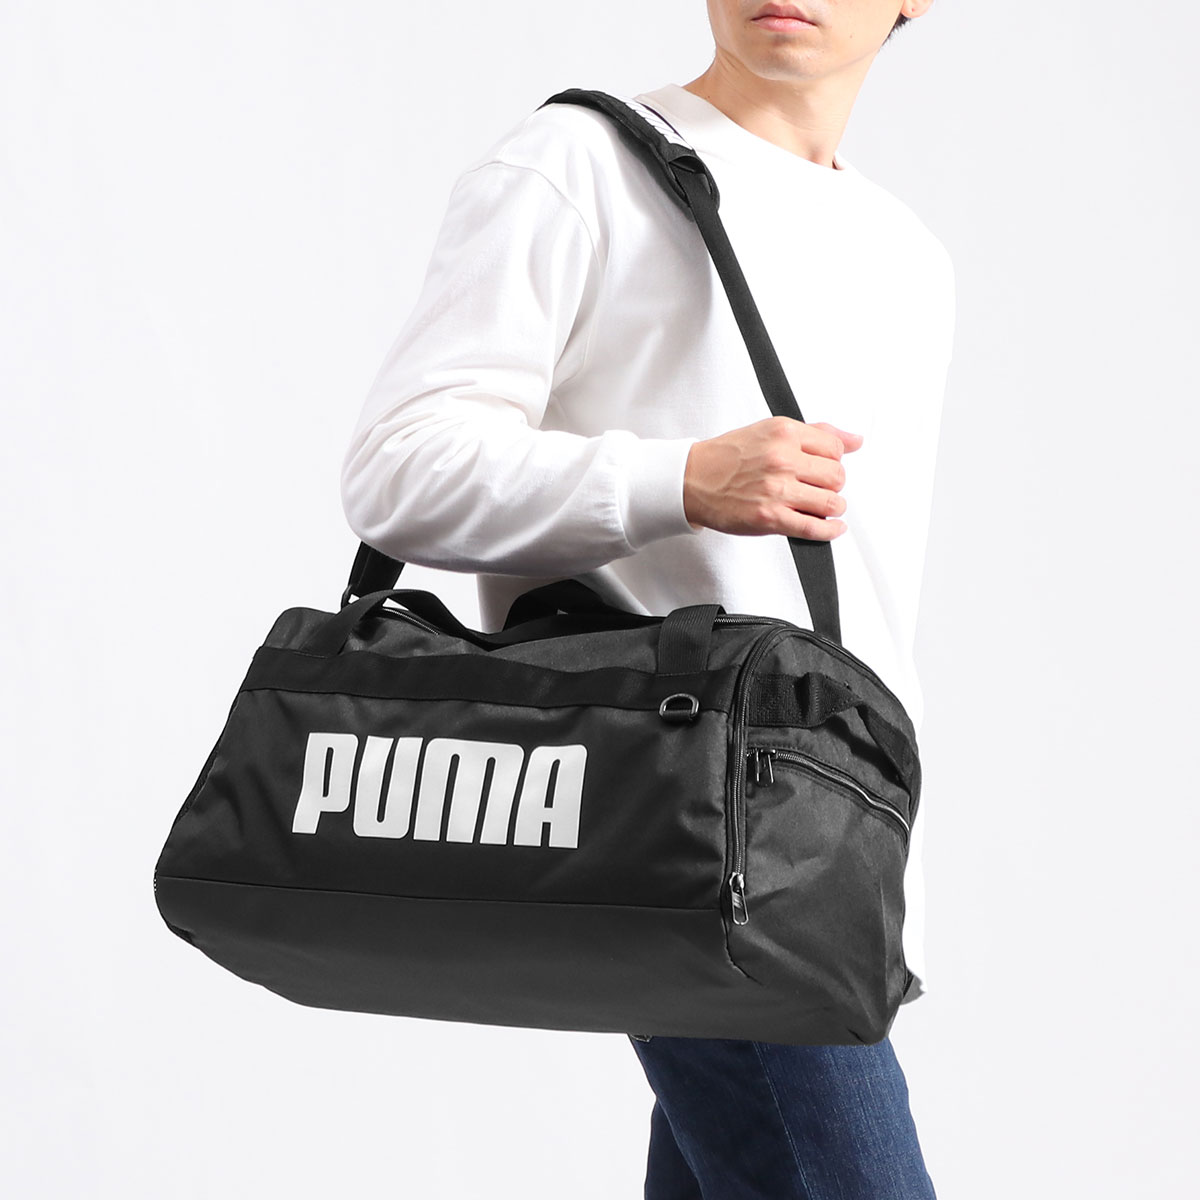 PUMA プーマ チャレンジャー ダッフルバッグ S 35L 076620